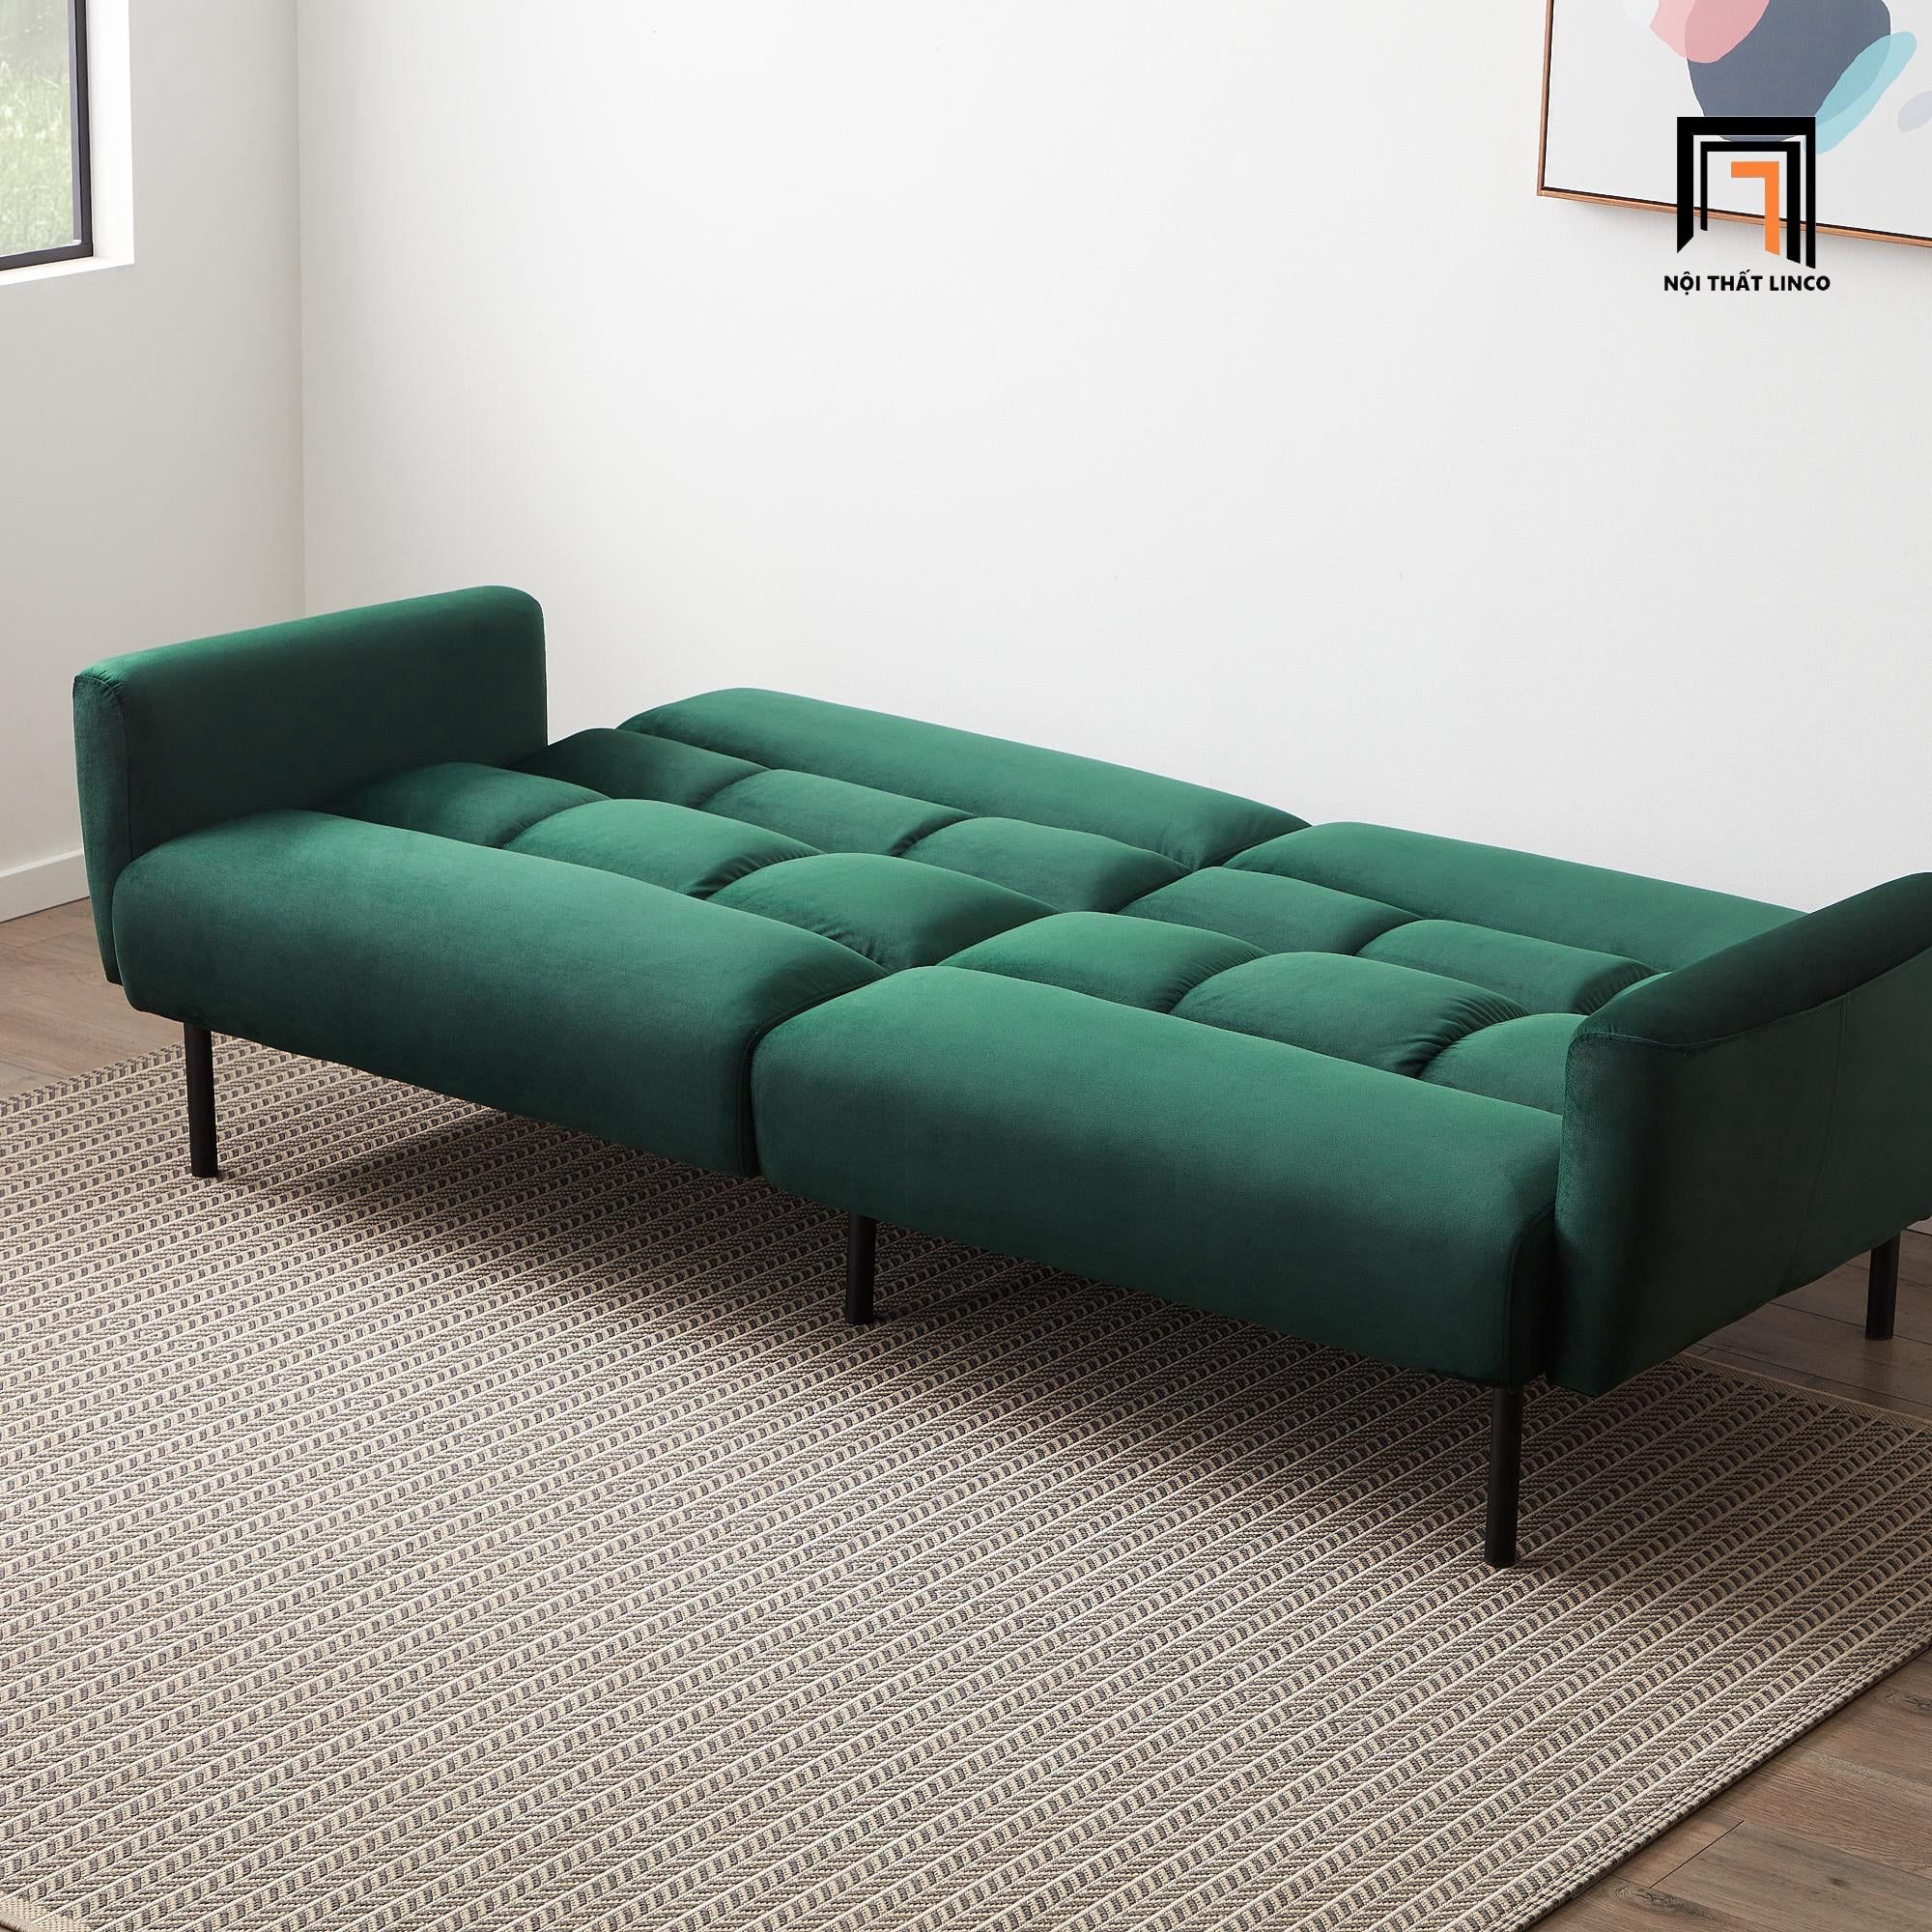  Ghế sofa giường bật nằm thông minh GB16 Mayview dài 2m 